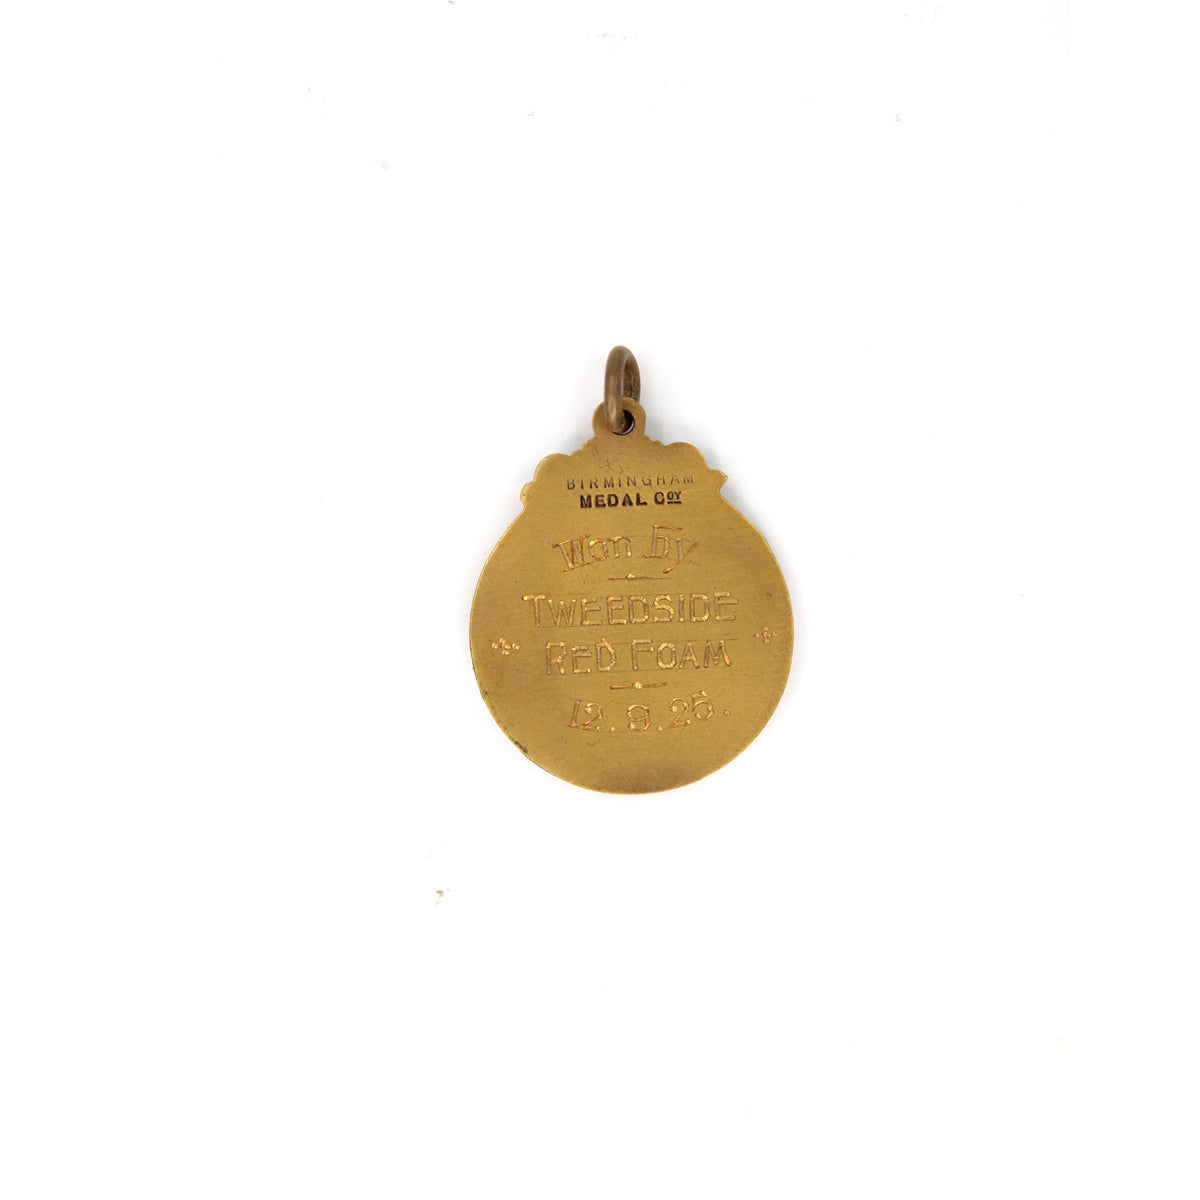 Airedale & Bulldog Club Medallion (Awarded Dec, 9th 1925)